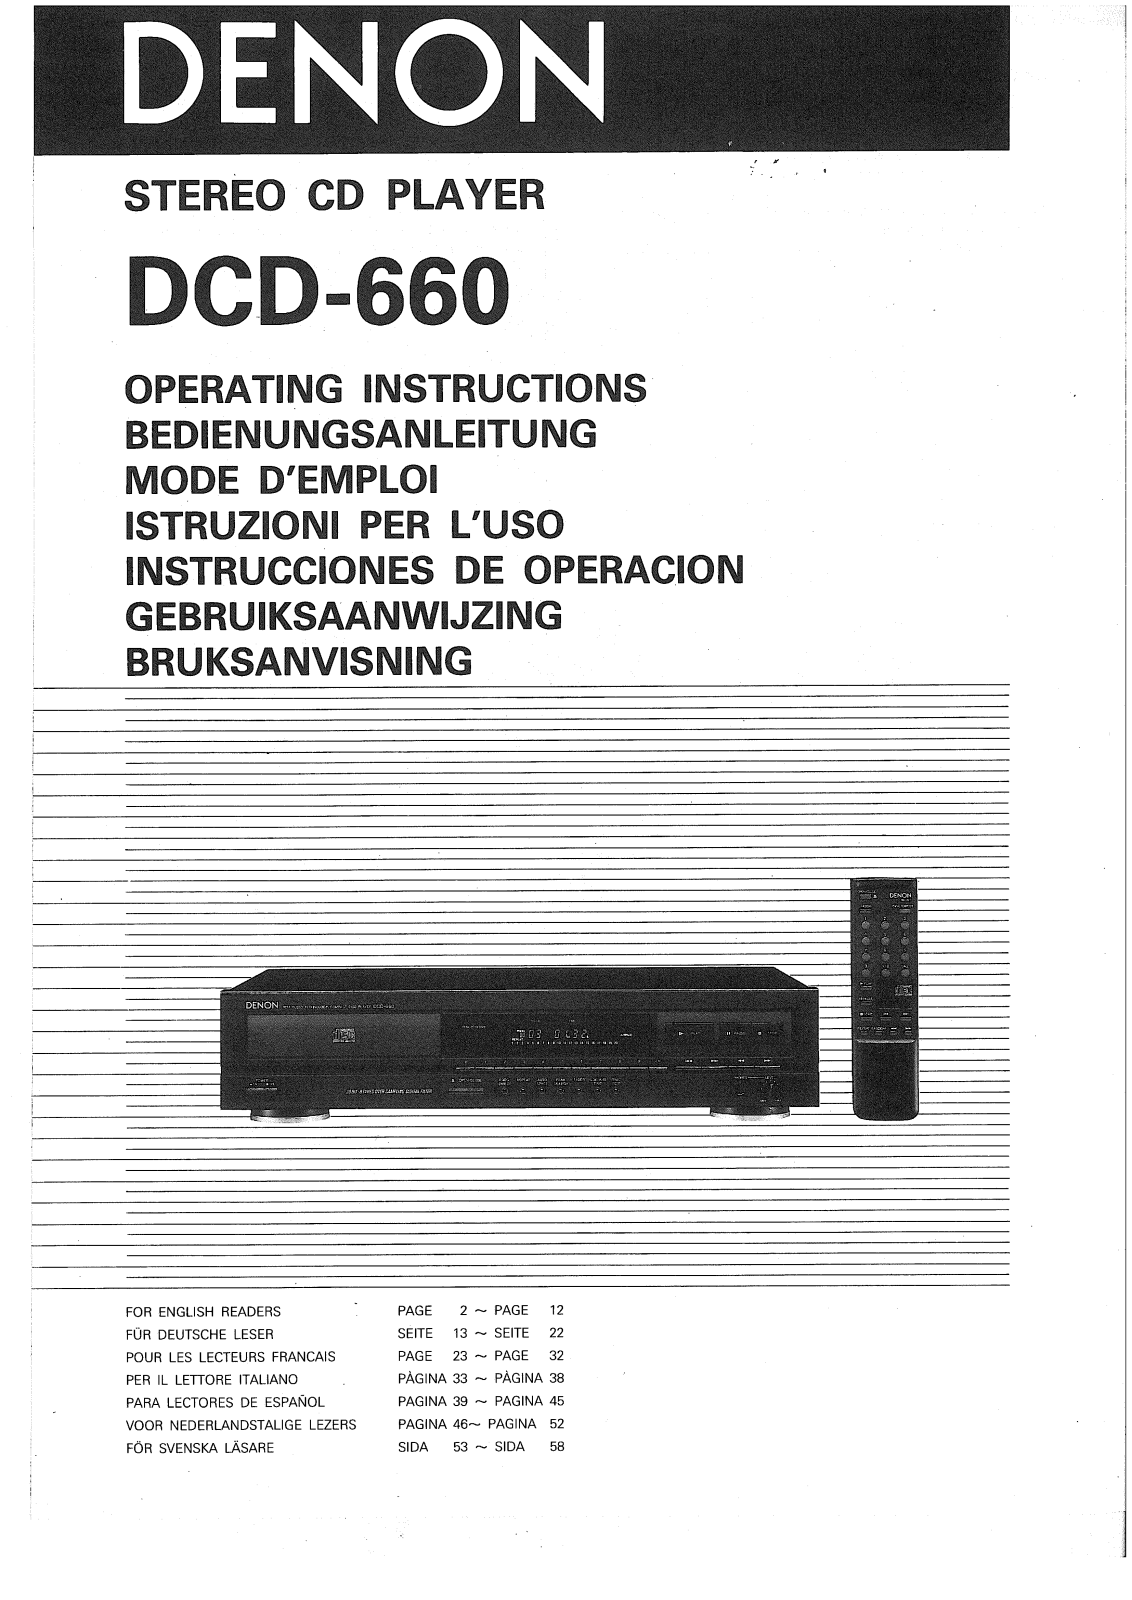 Denon DCD-660 Owner's Manual